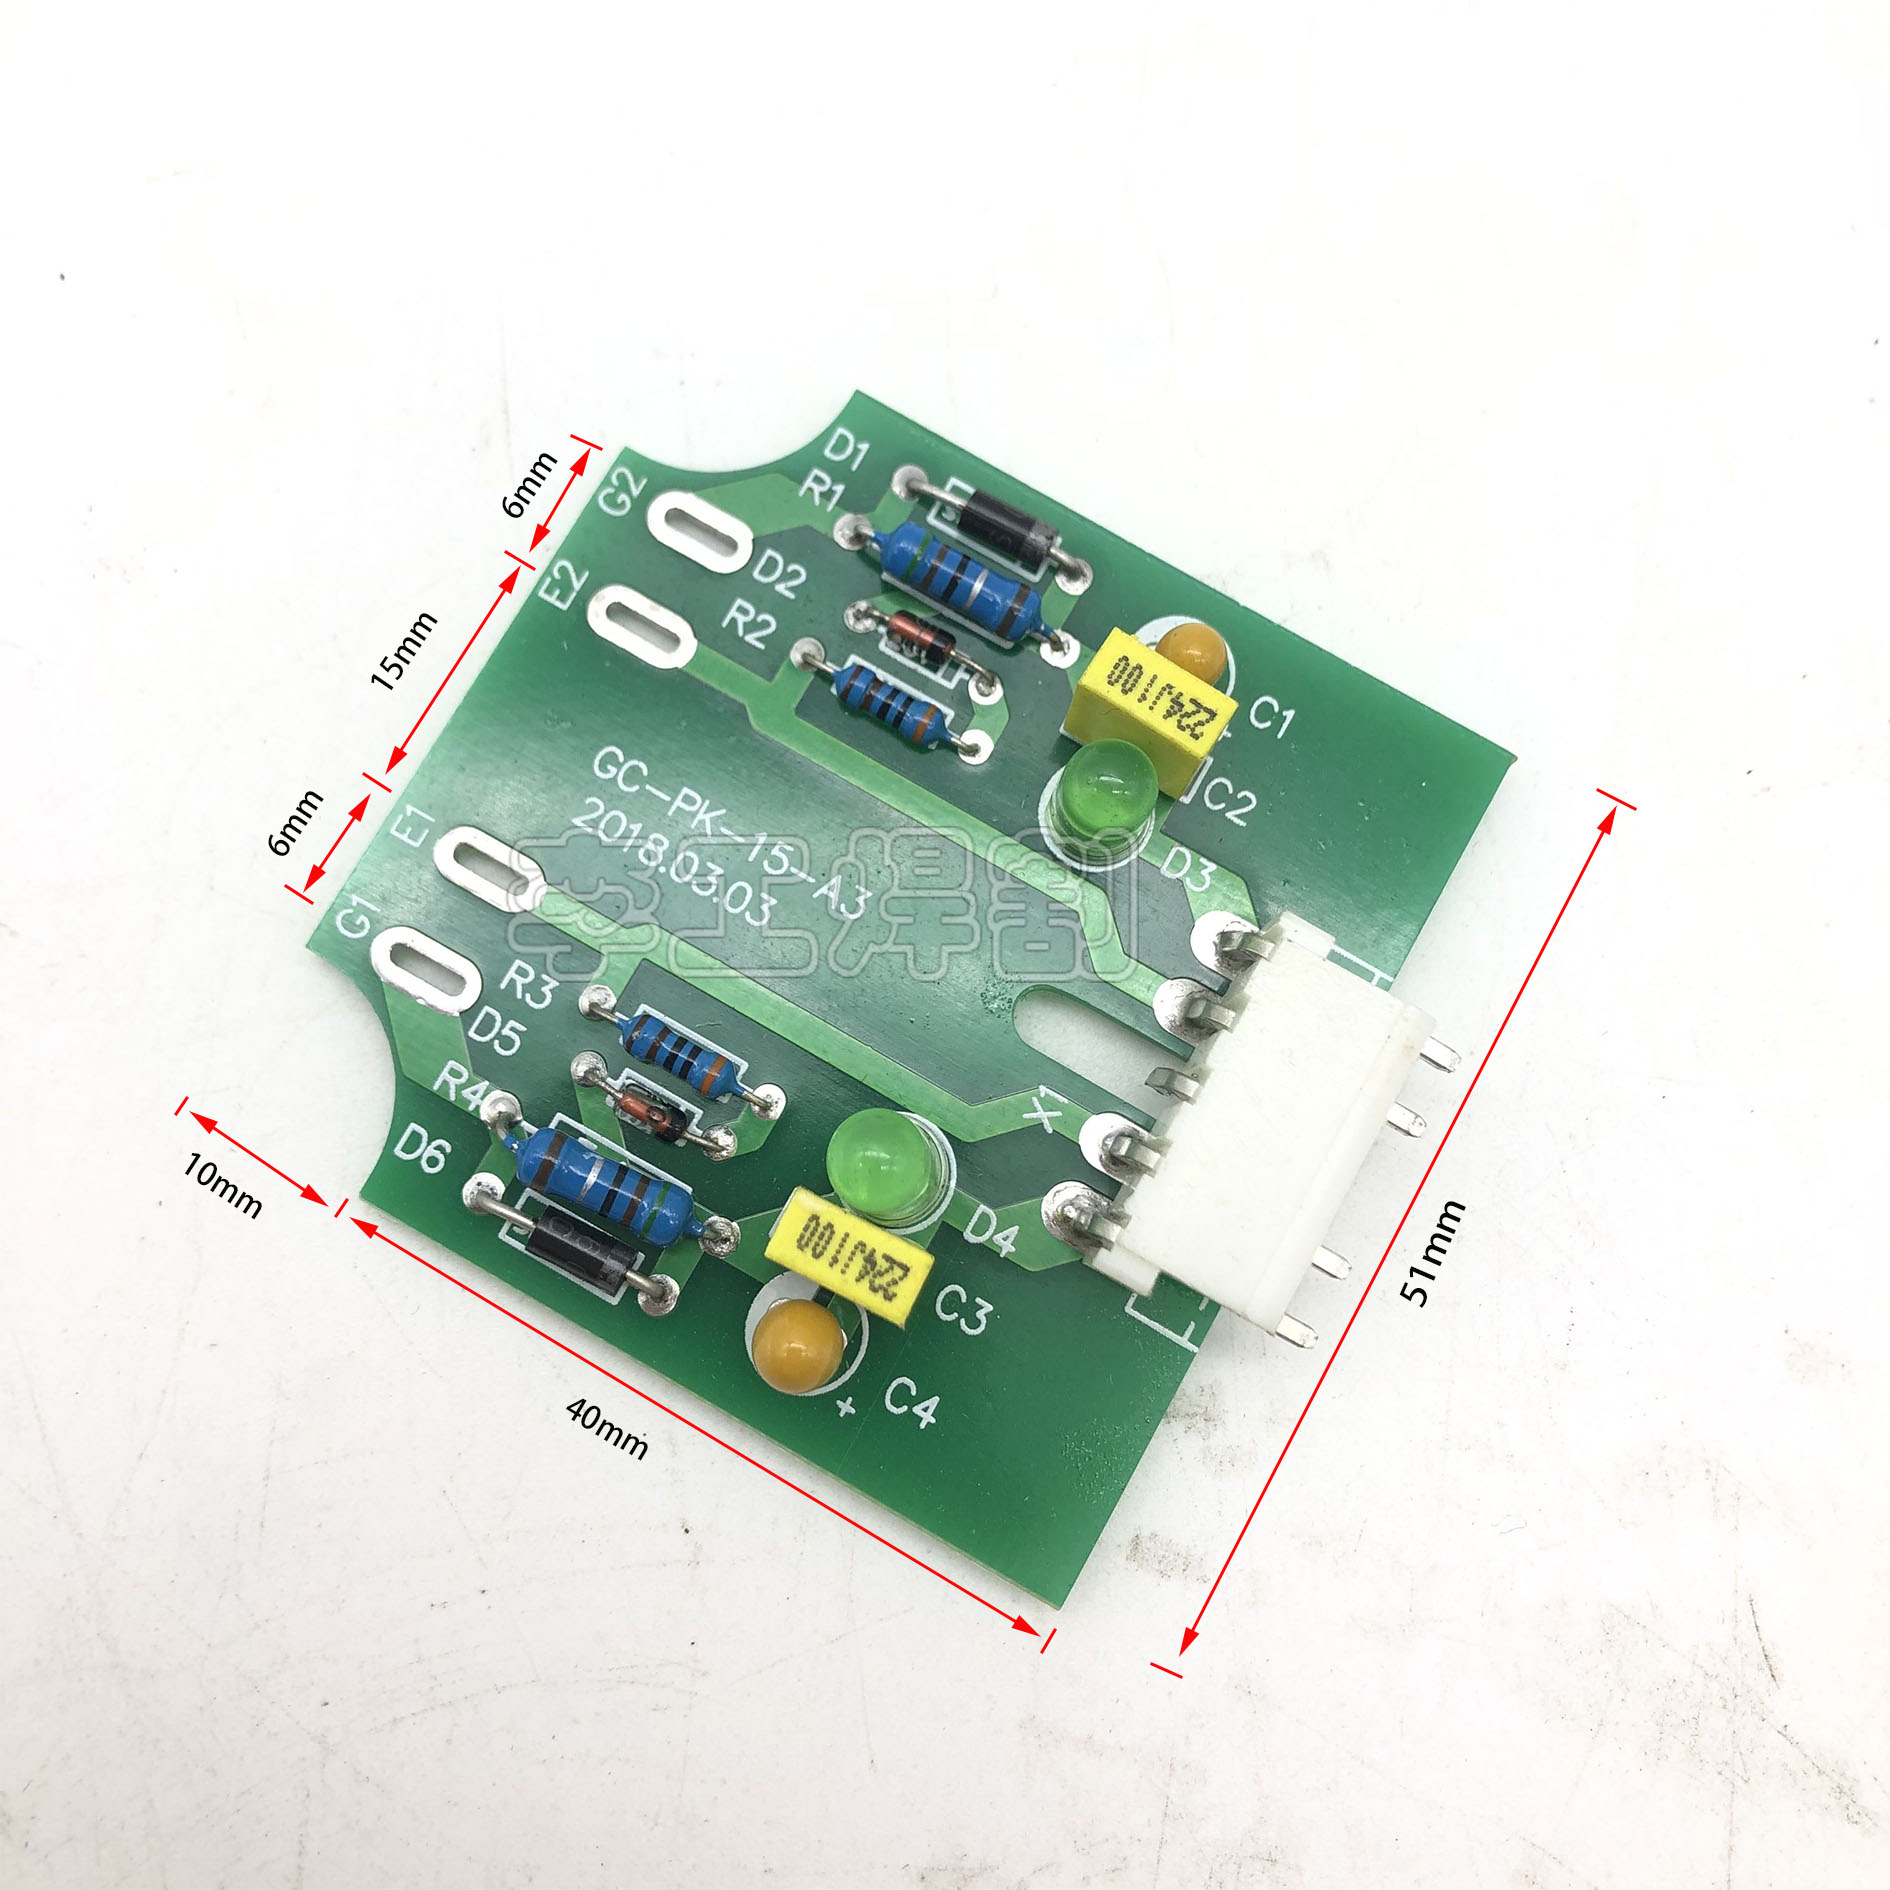 逆变焊机配件 IGBT驱动板 NBC/LGK 触发板IGBT模块驱动板 通瑞款